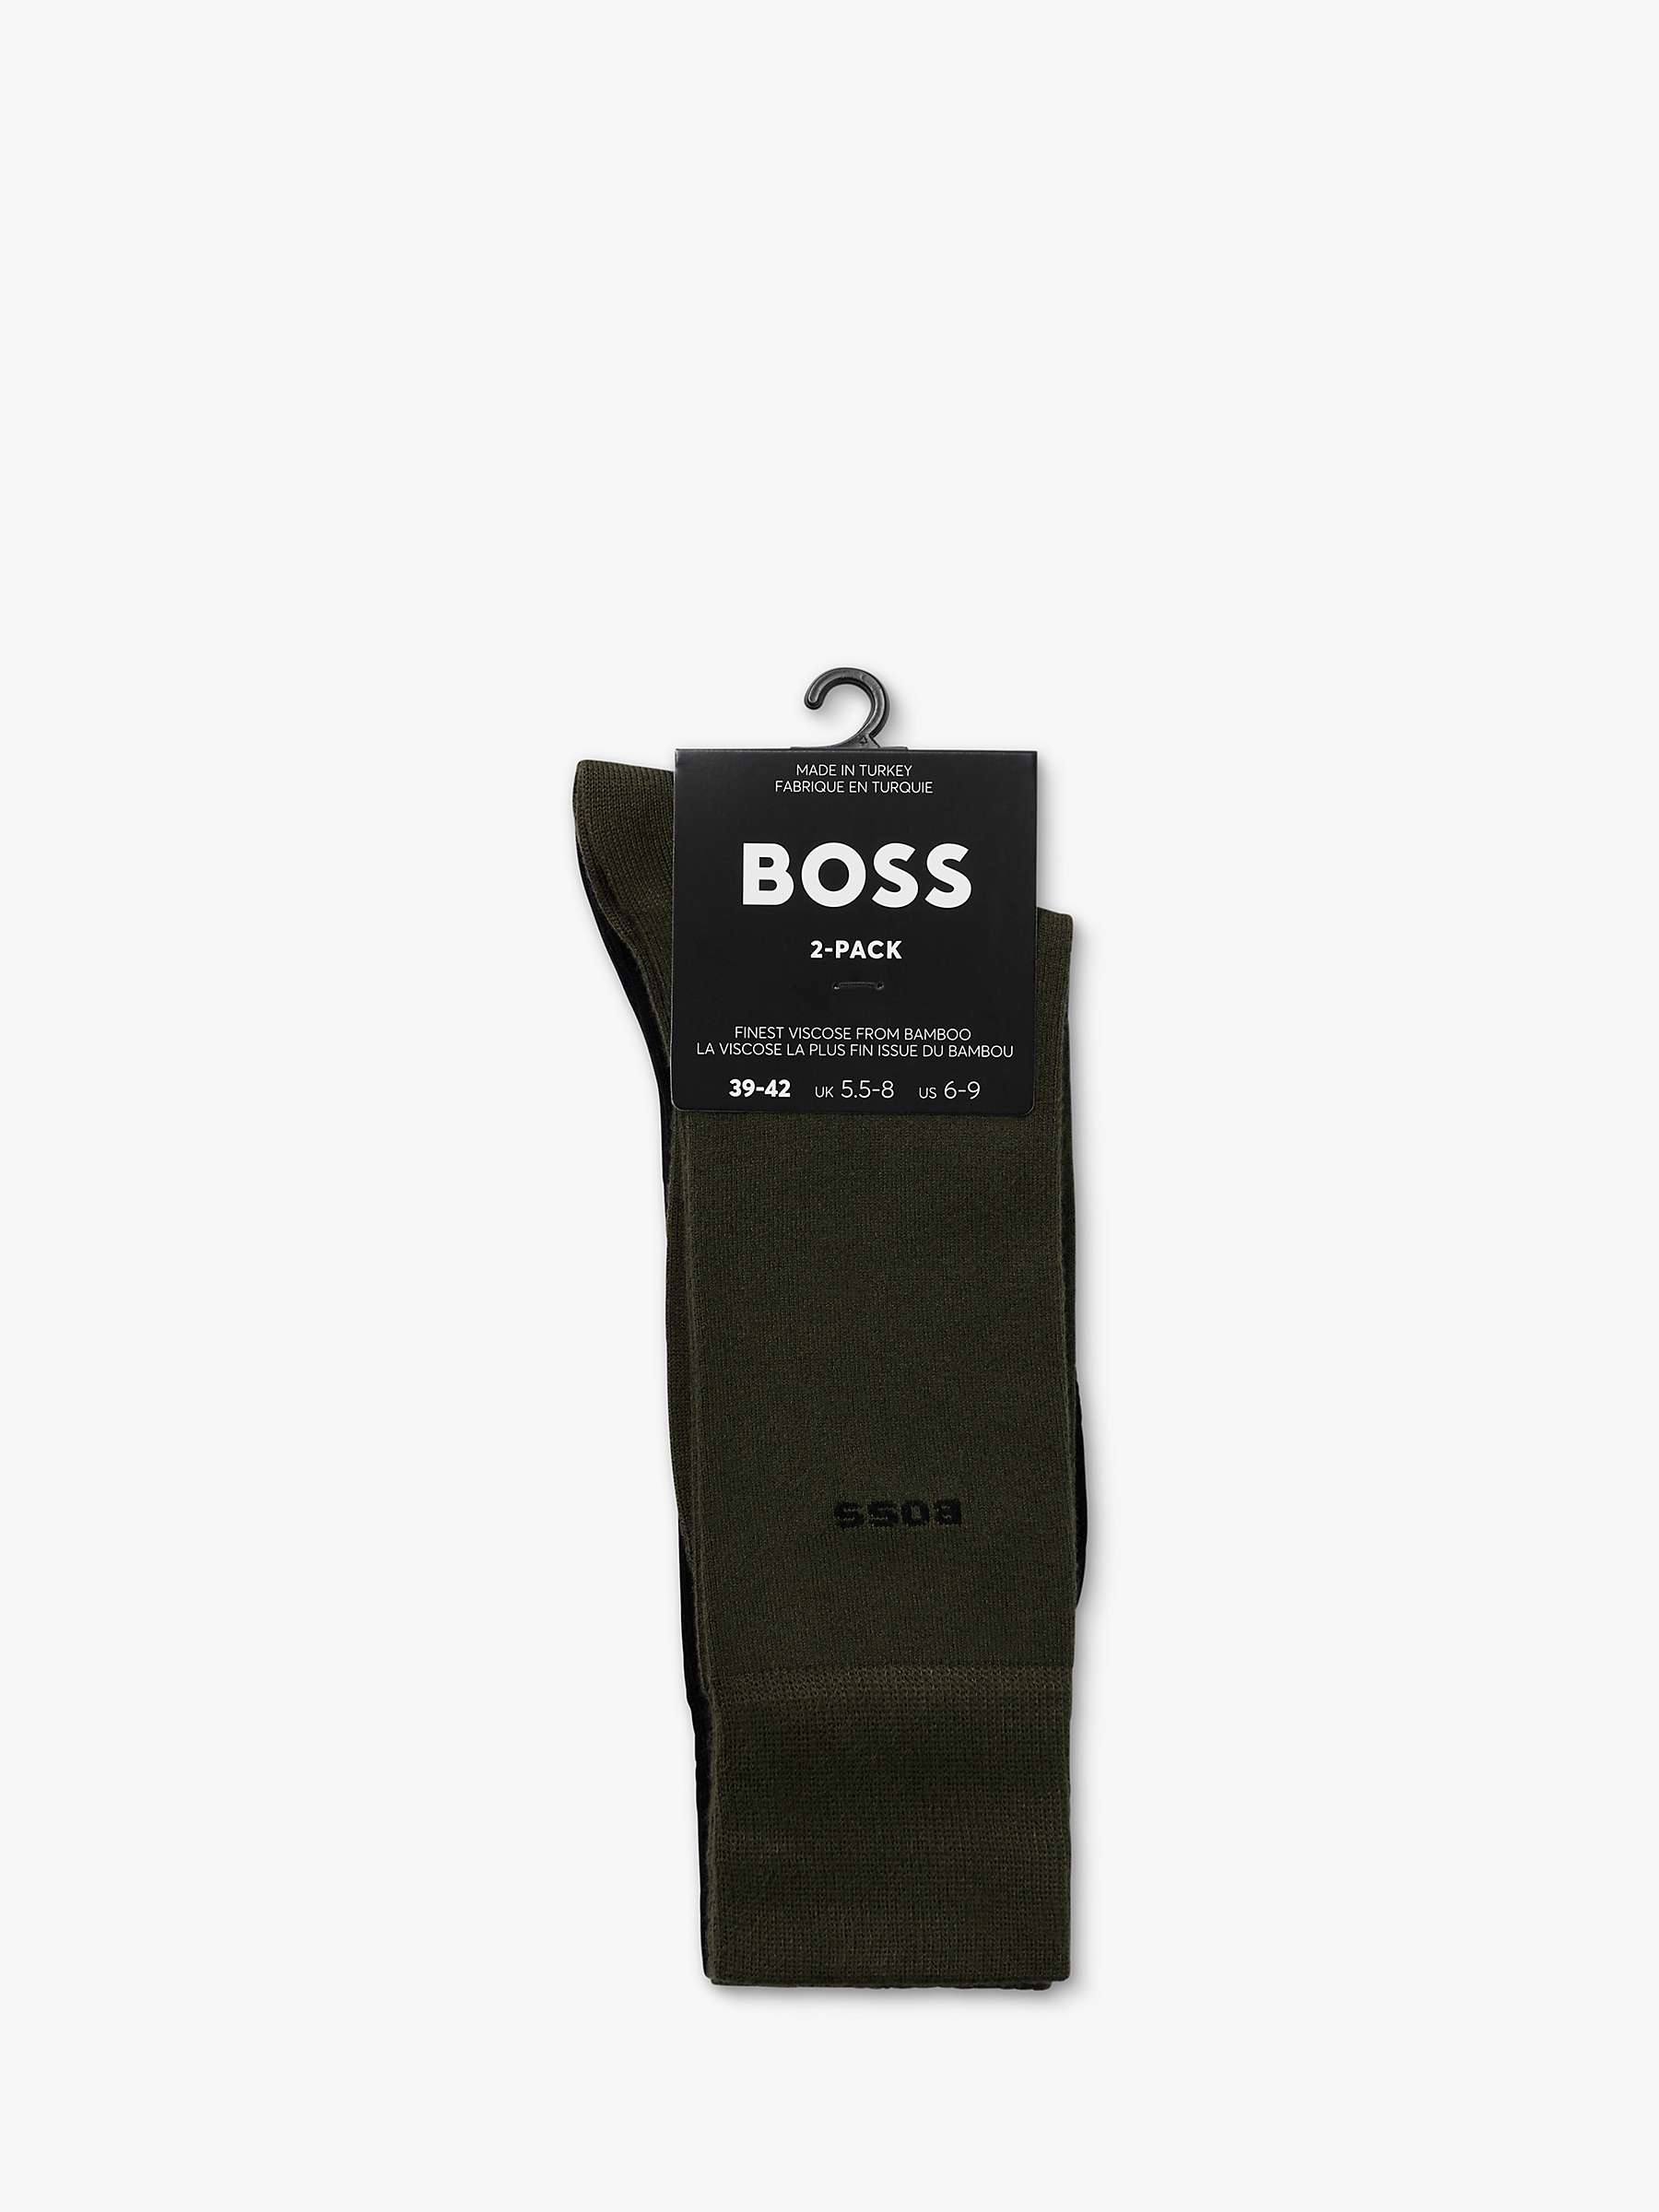 Buy BOSS Soft Plain Logo Socks, Pack Of 2, Open Green Online at johnlewis.com